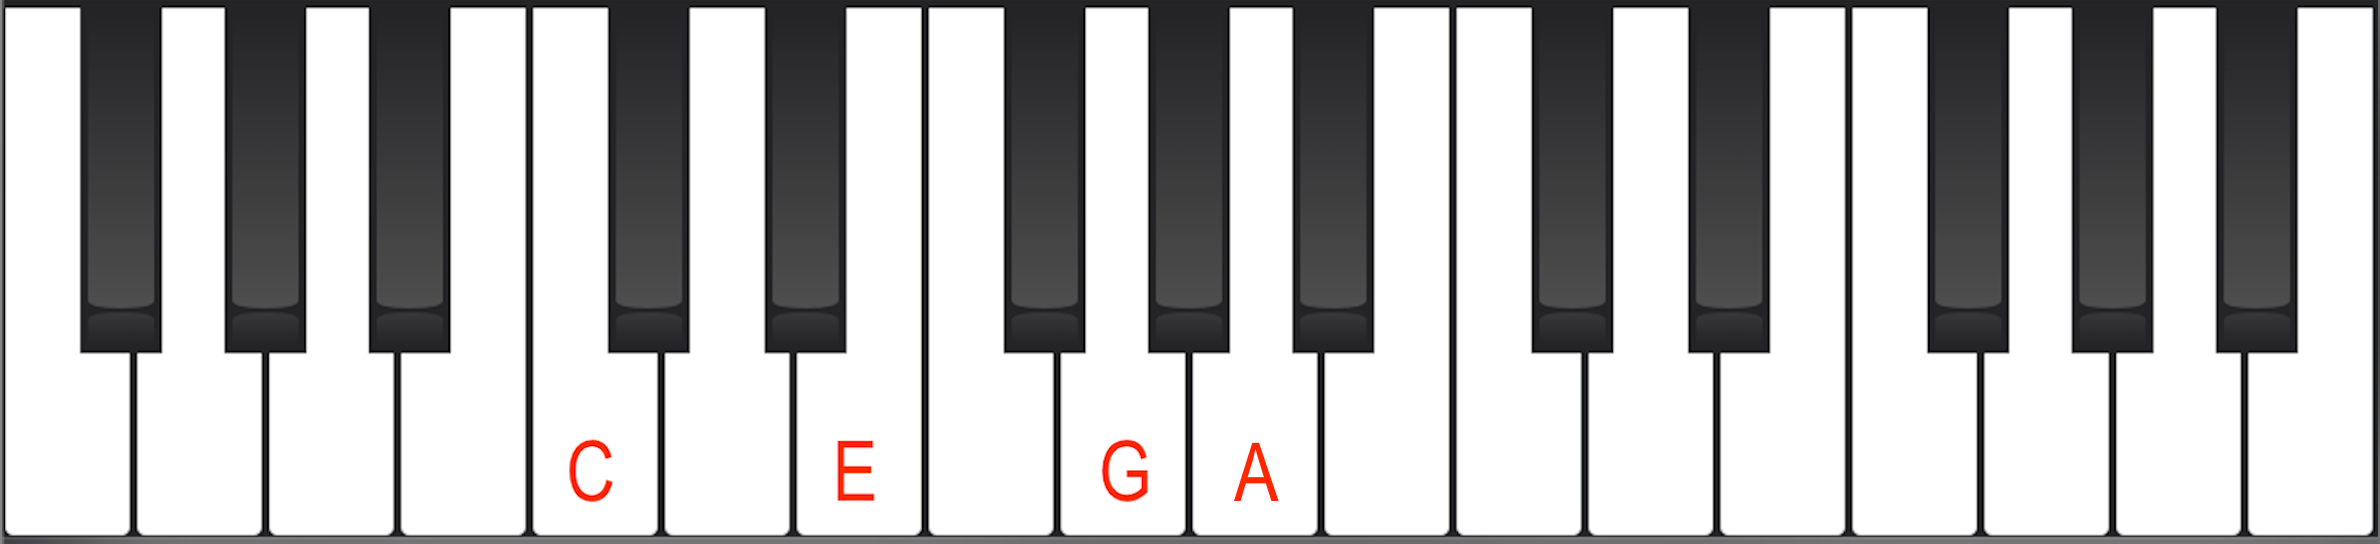 Cmaj6 chord on piano